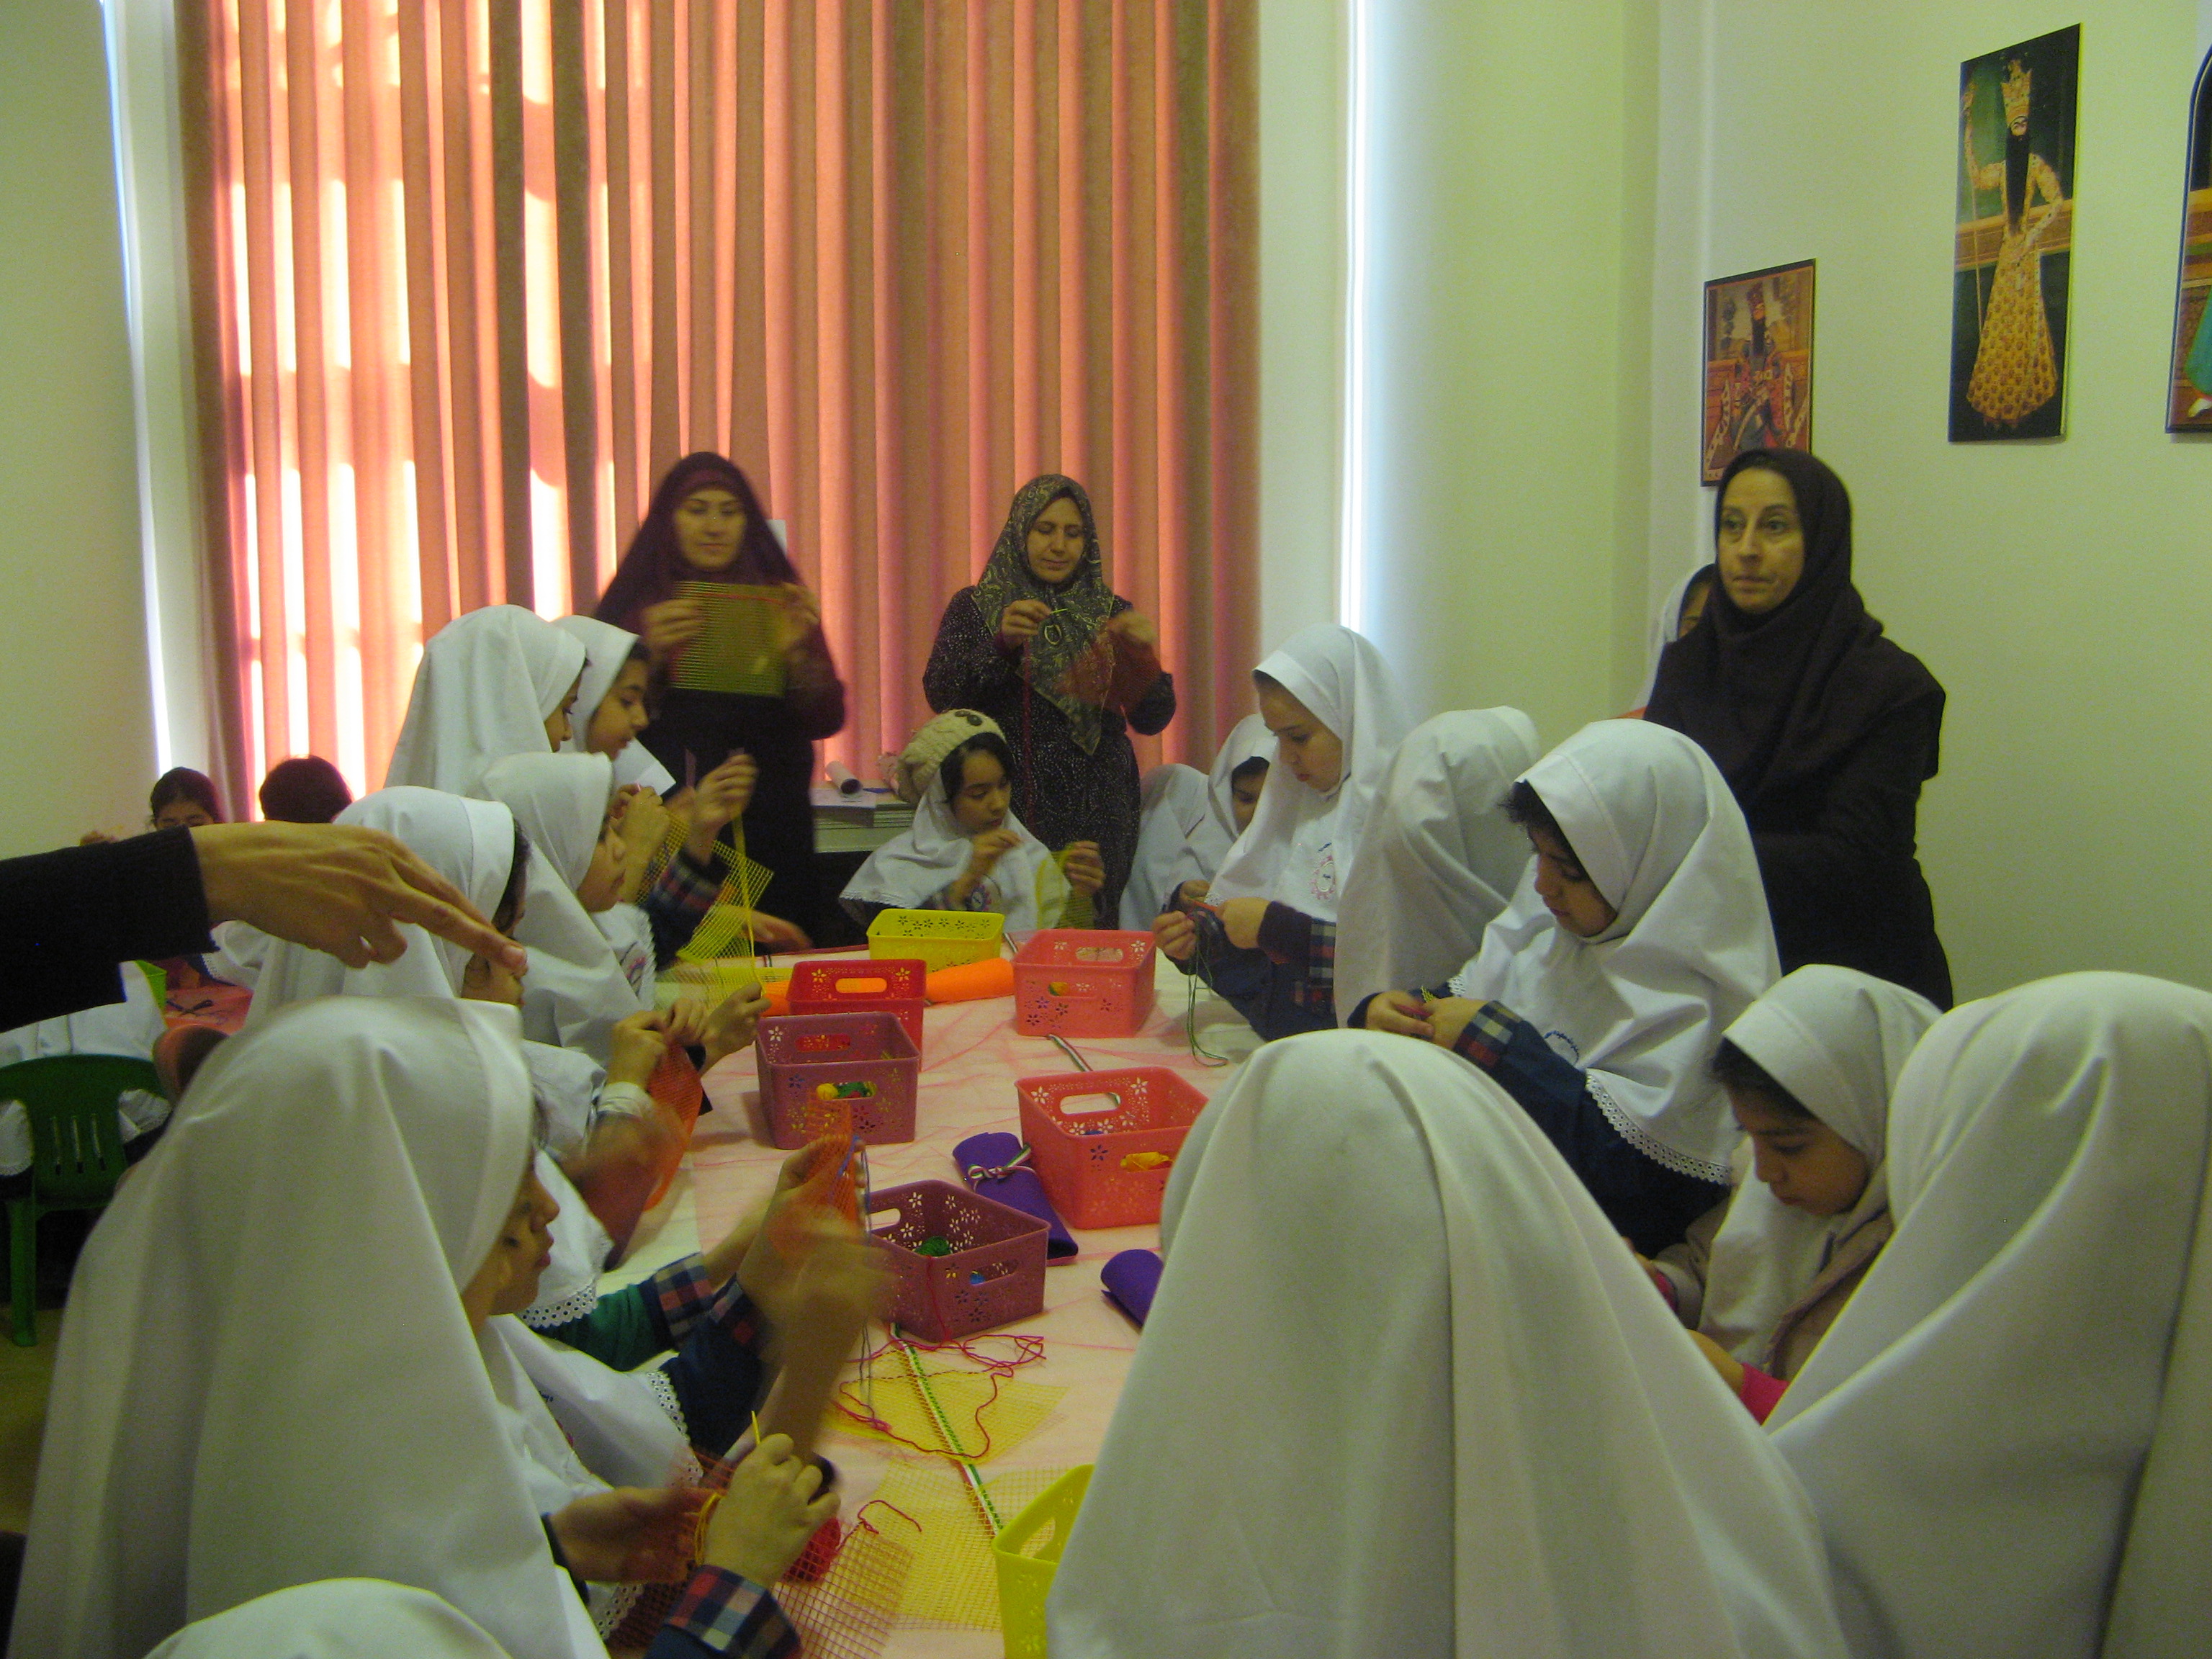 کارگاه آموزشی دوخت و دوزهای سنتی در سعدآباد برگزار شد